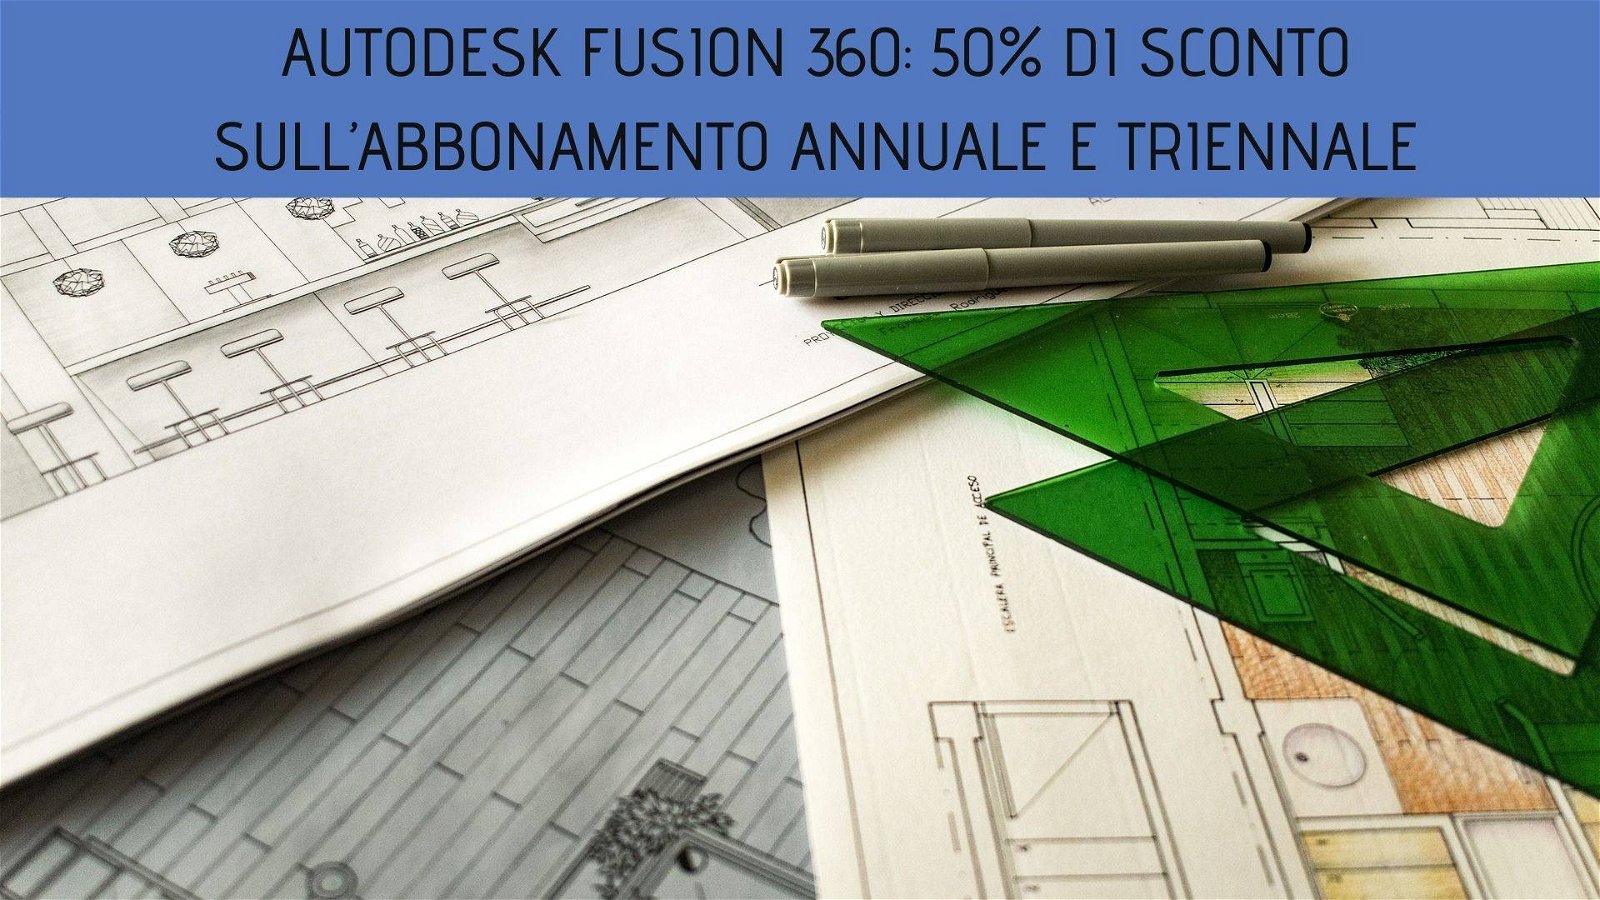 Immagine di Autodesk Fusion 360: 50% di sconto sull’abbonamento annuale e triennale